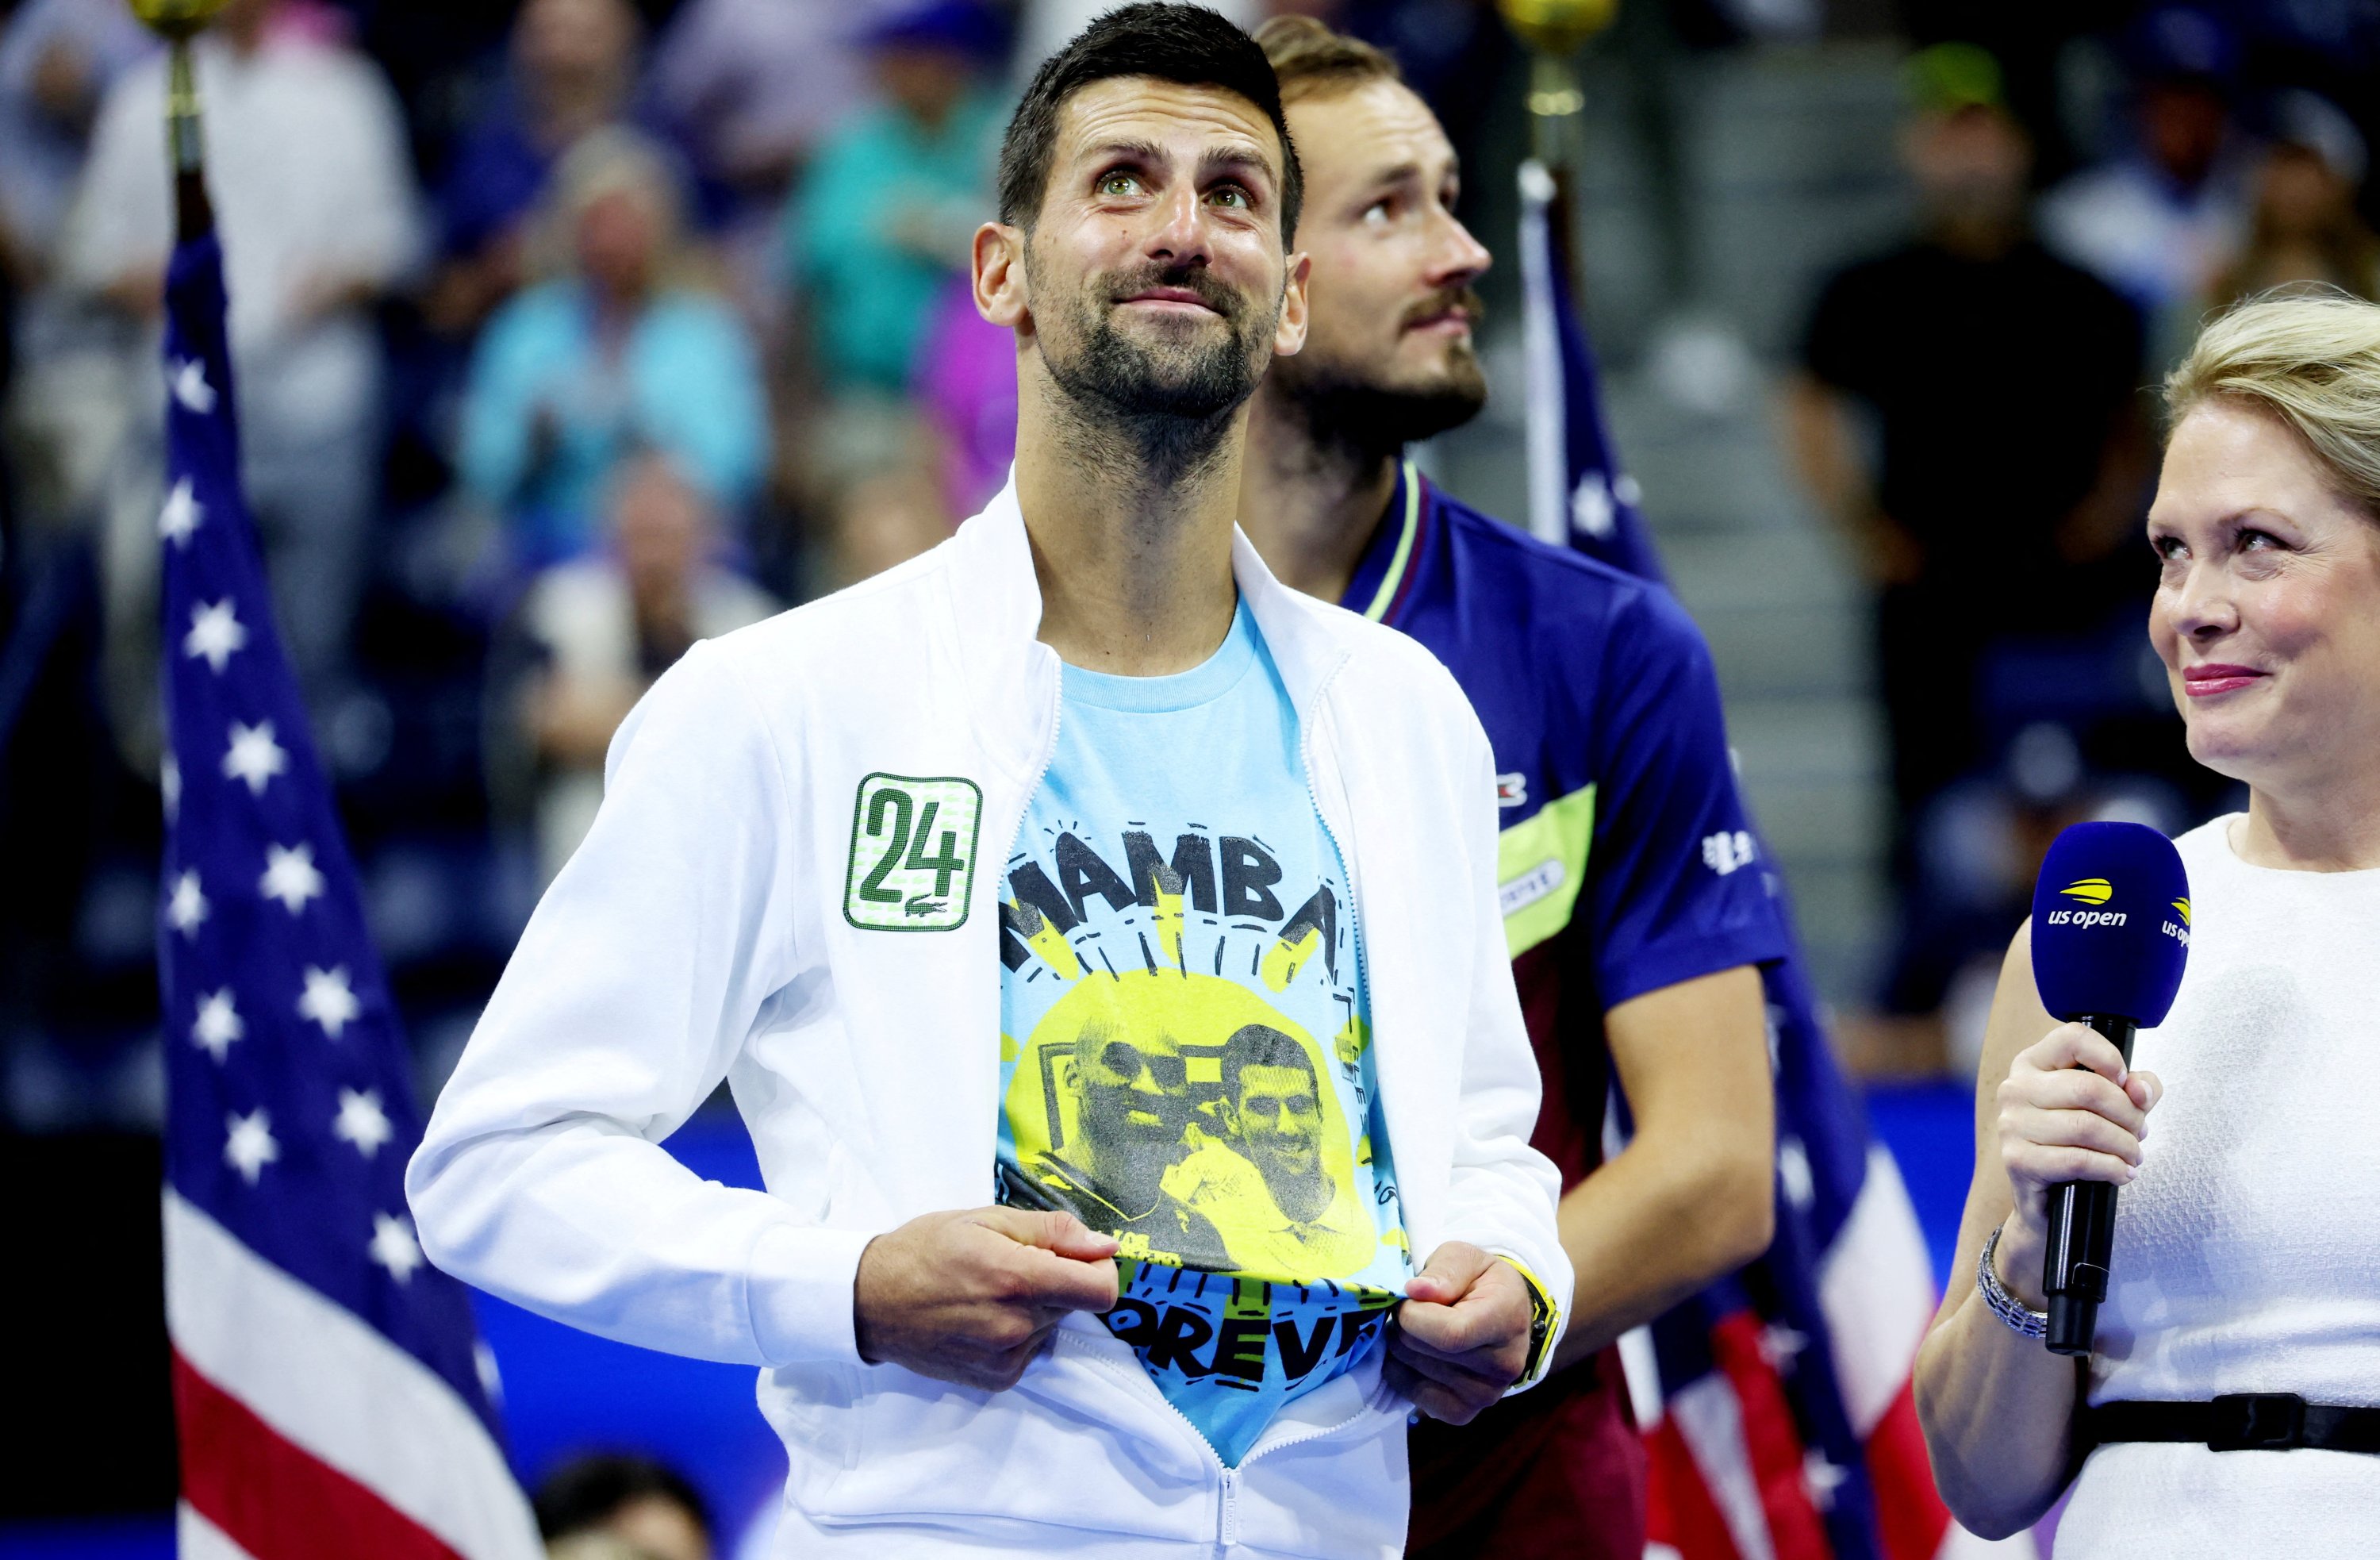 Djokovic Honors Kobe Bryant With 'Mamba Forever' Shirt - The New